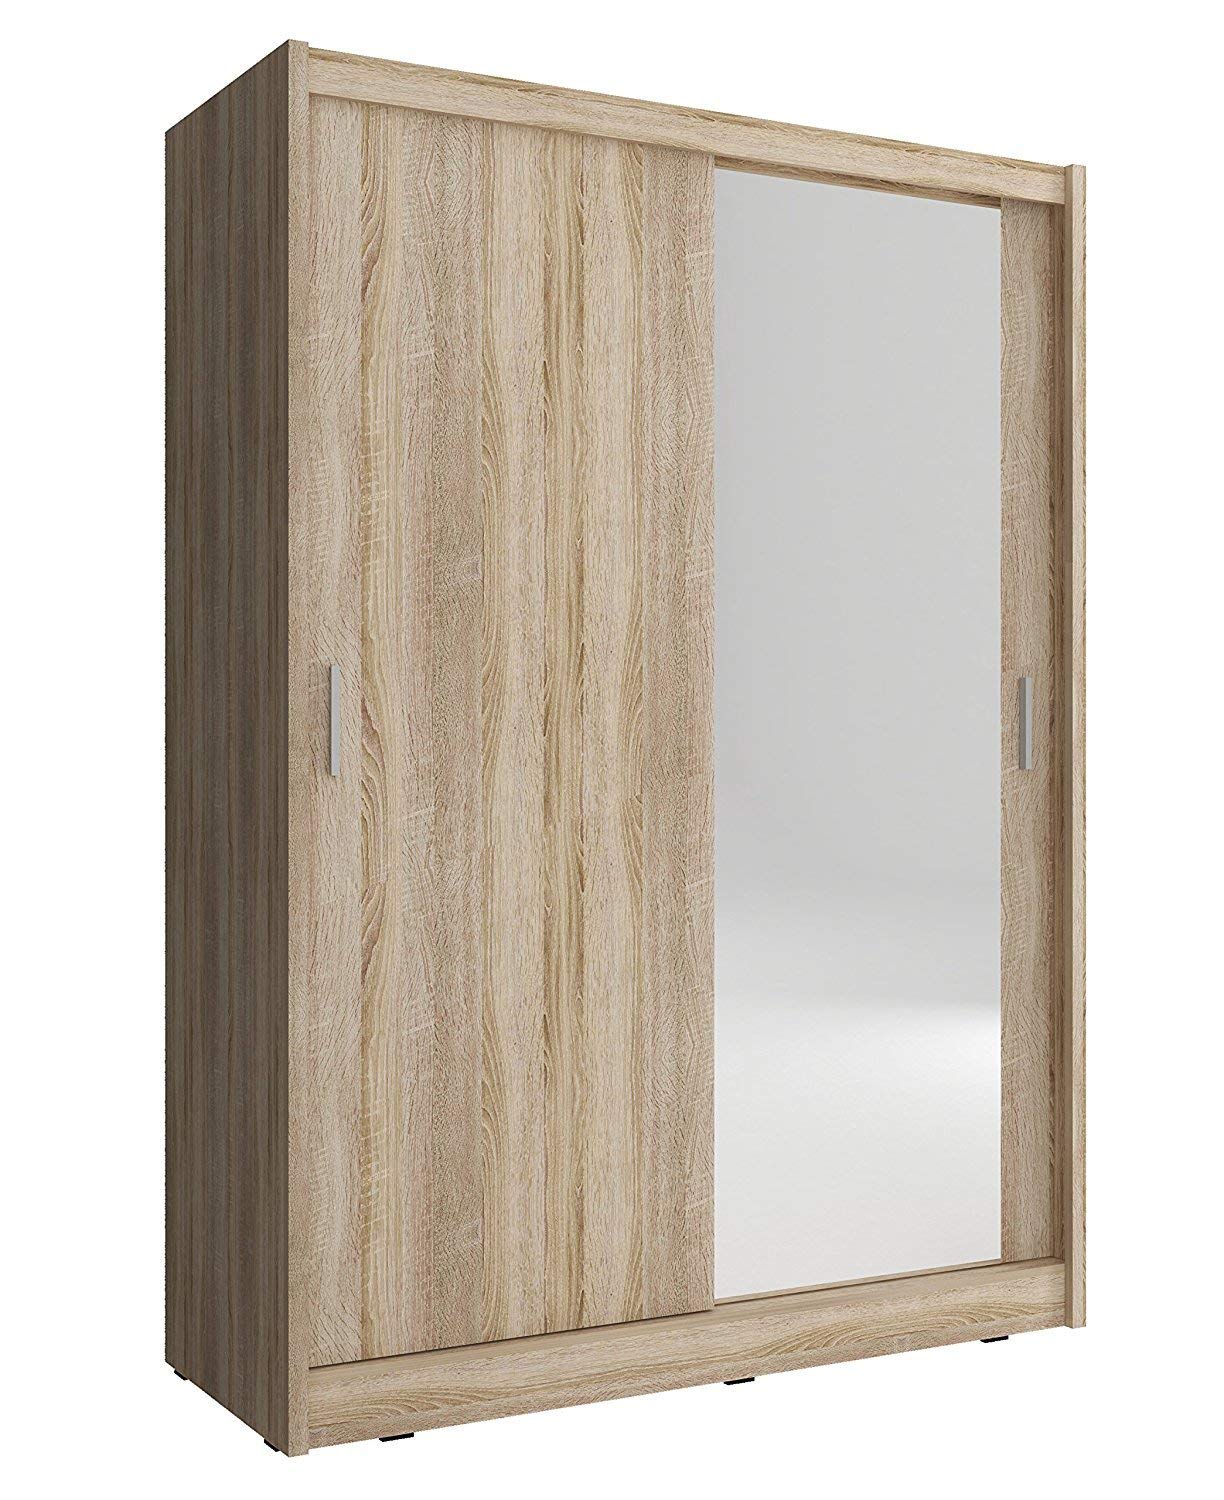  wooden sliding door wardrobe closet ues for bedroom